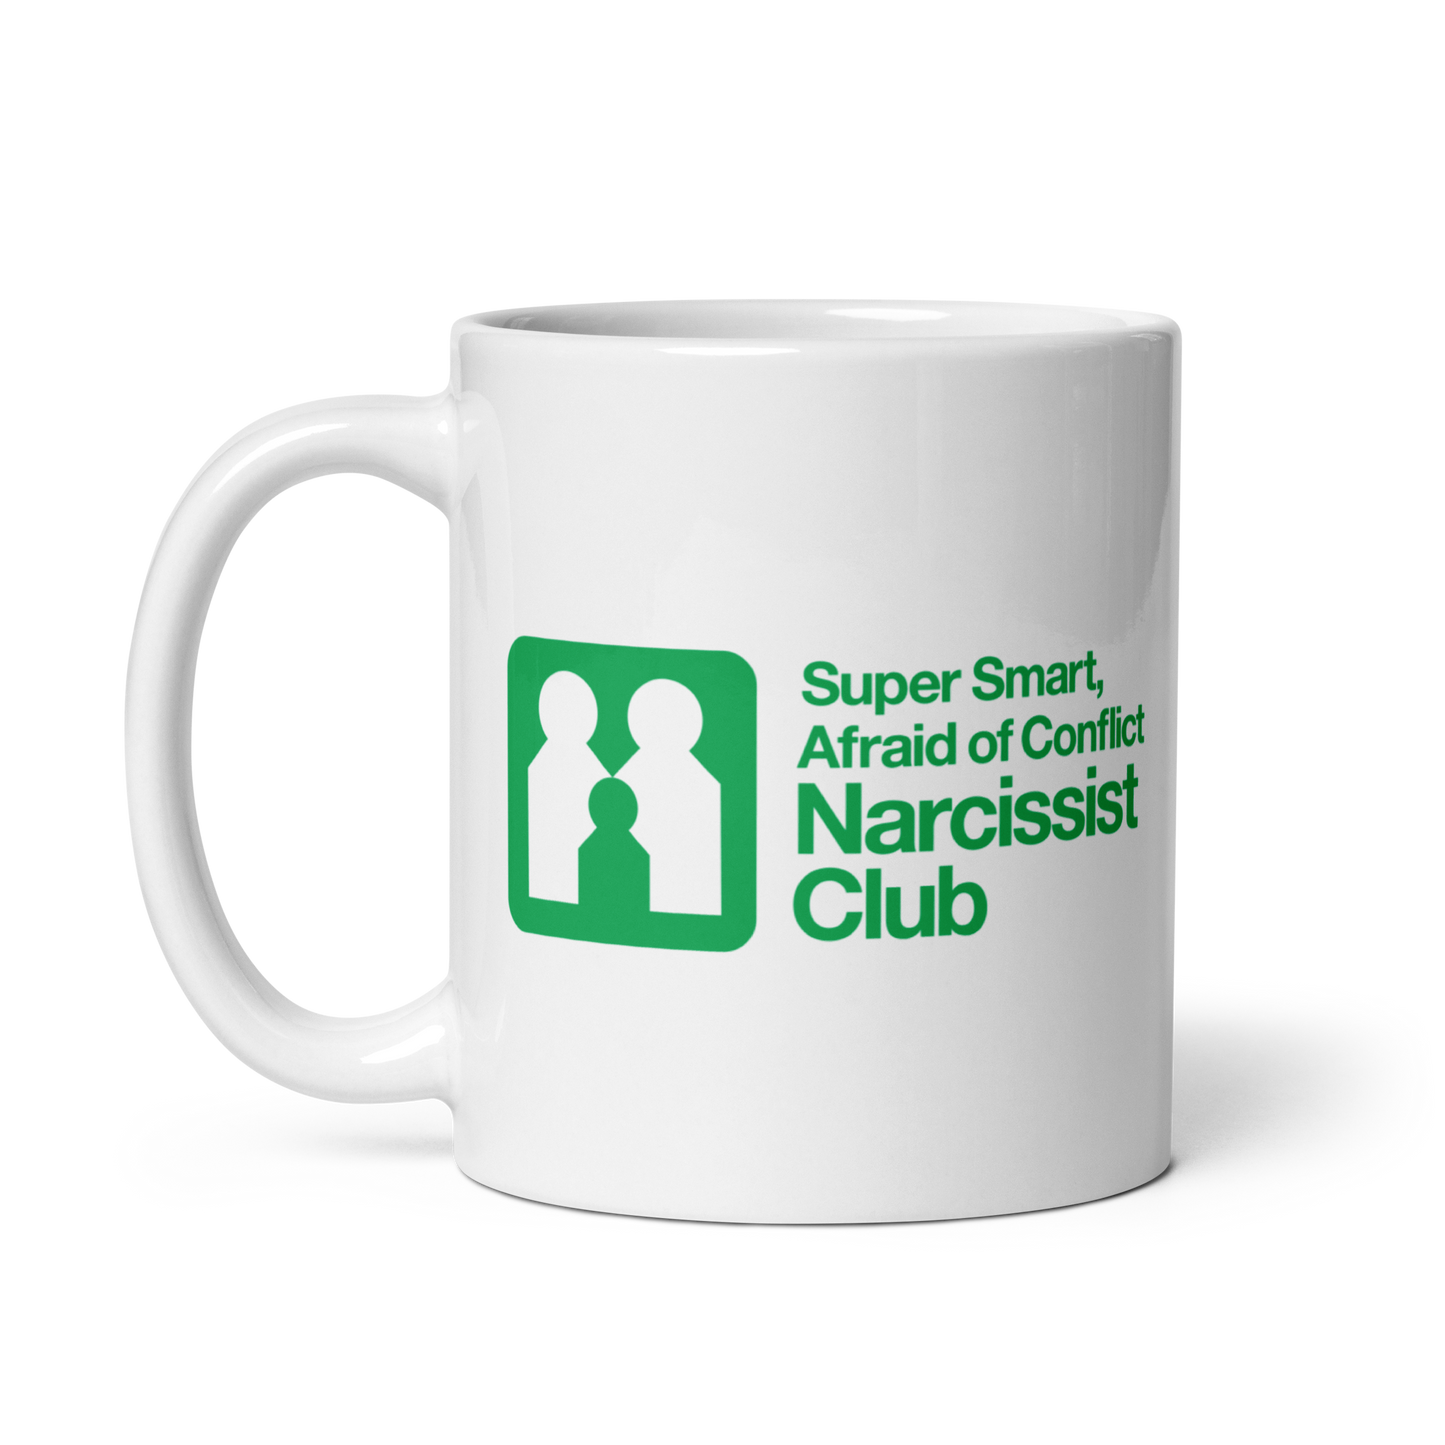 Super Smart mug